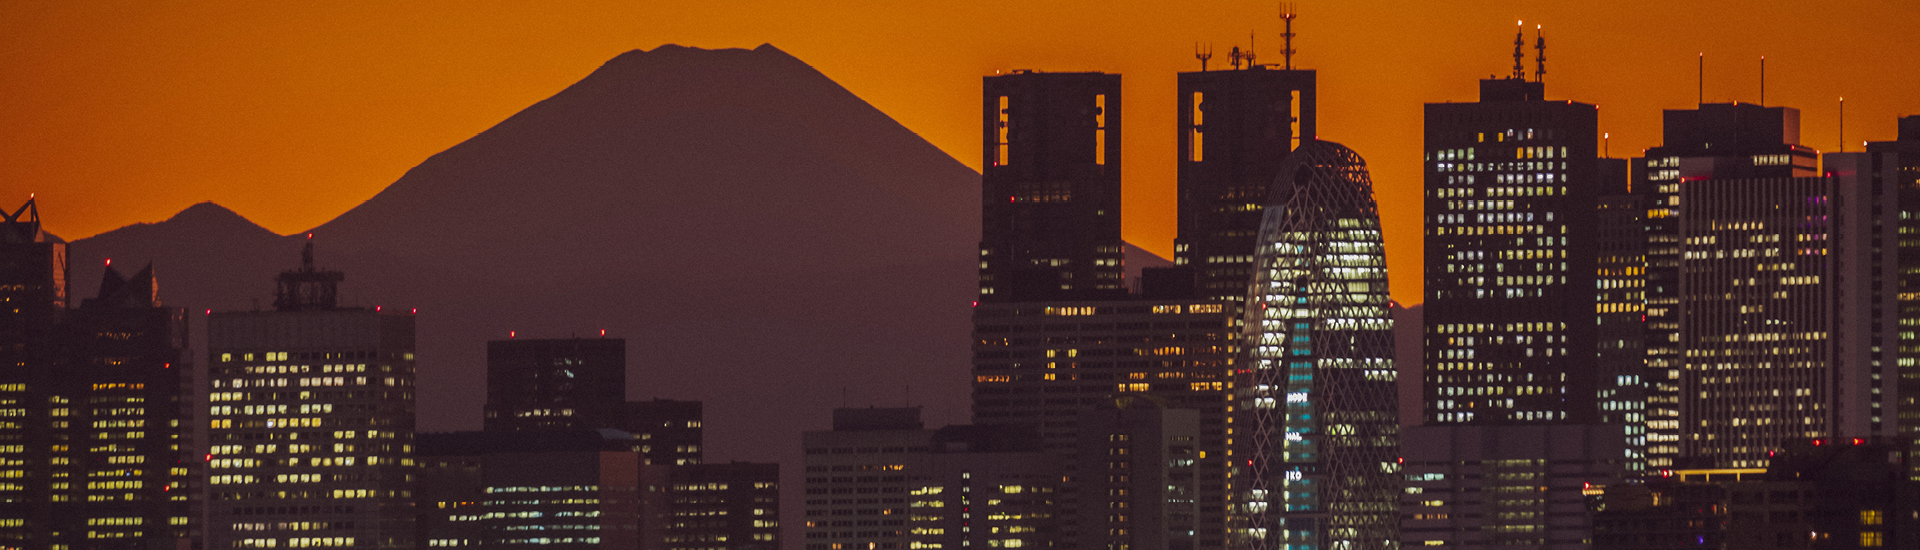 Cena urbana com diversos prédios ao entardecer, com o céu alaranjado e a silhueta do  Monte Fuji ao fundo.